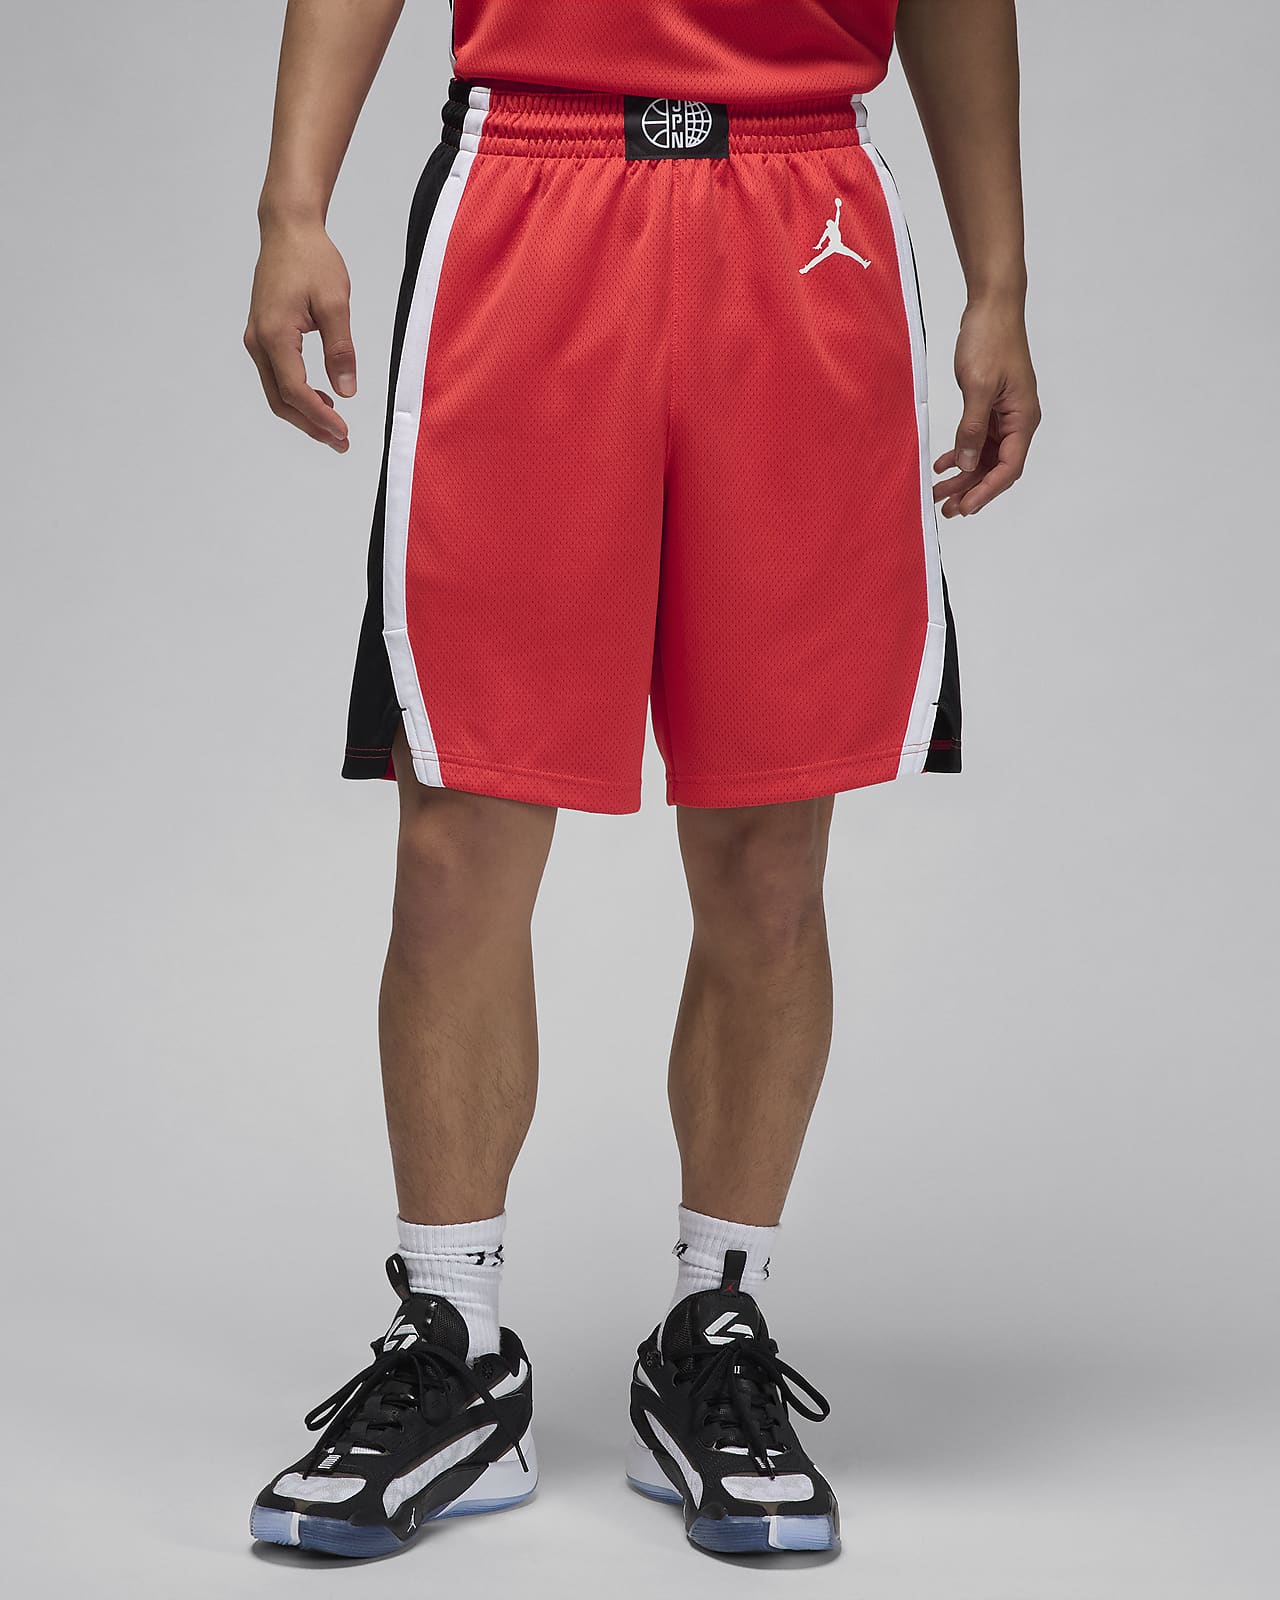 日本 リミテッド ロード メンズ ジョーダン バスケットボールショートパンツ